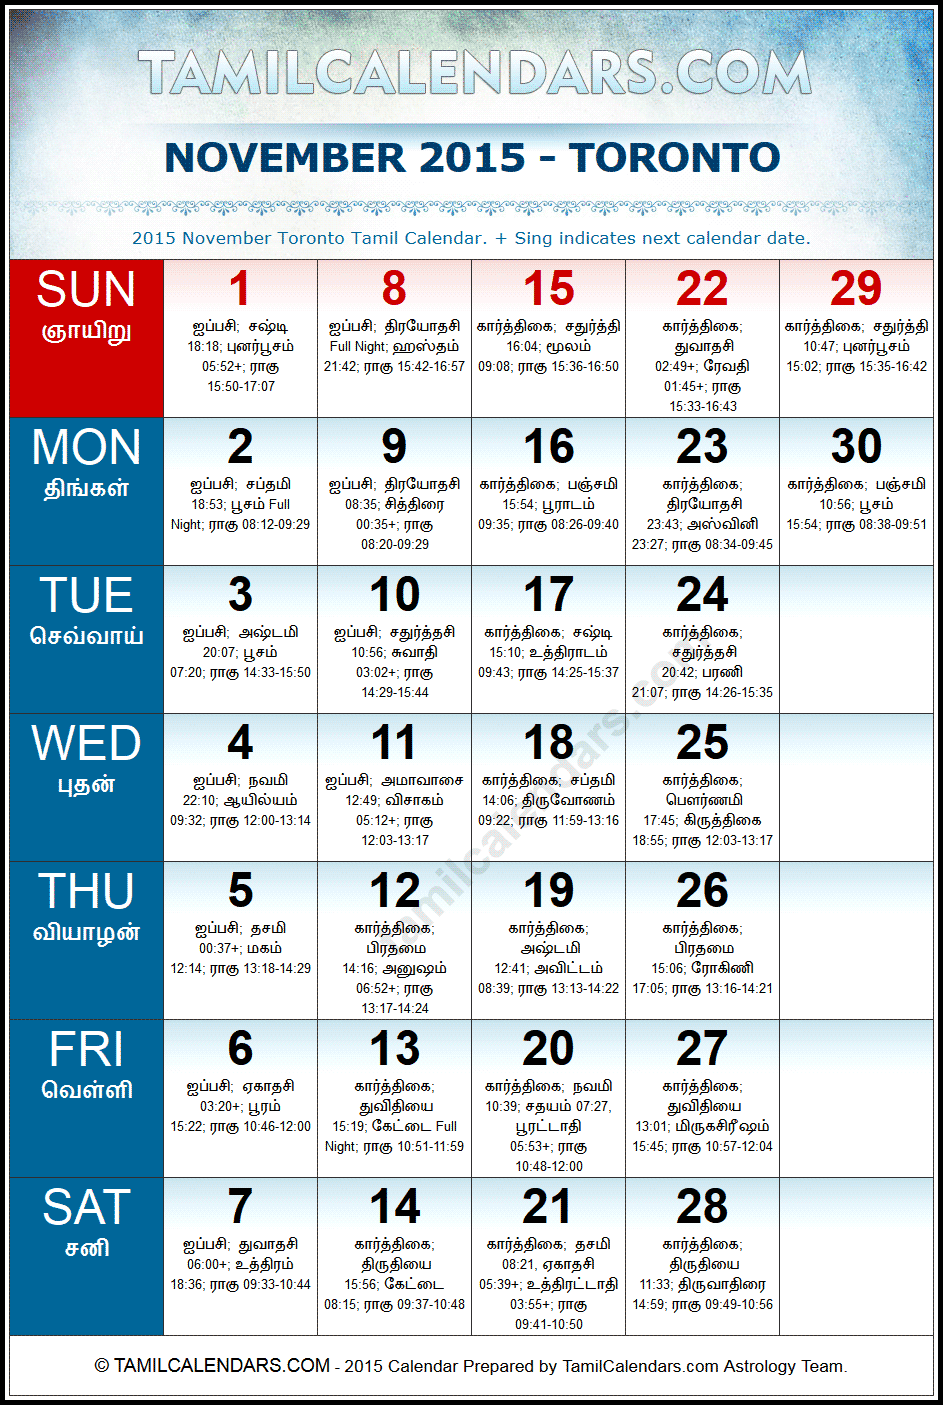 November 2015 Tamil Calendar for Toronto, Canada